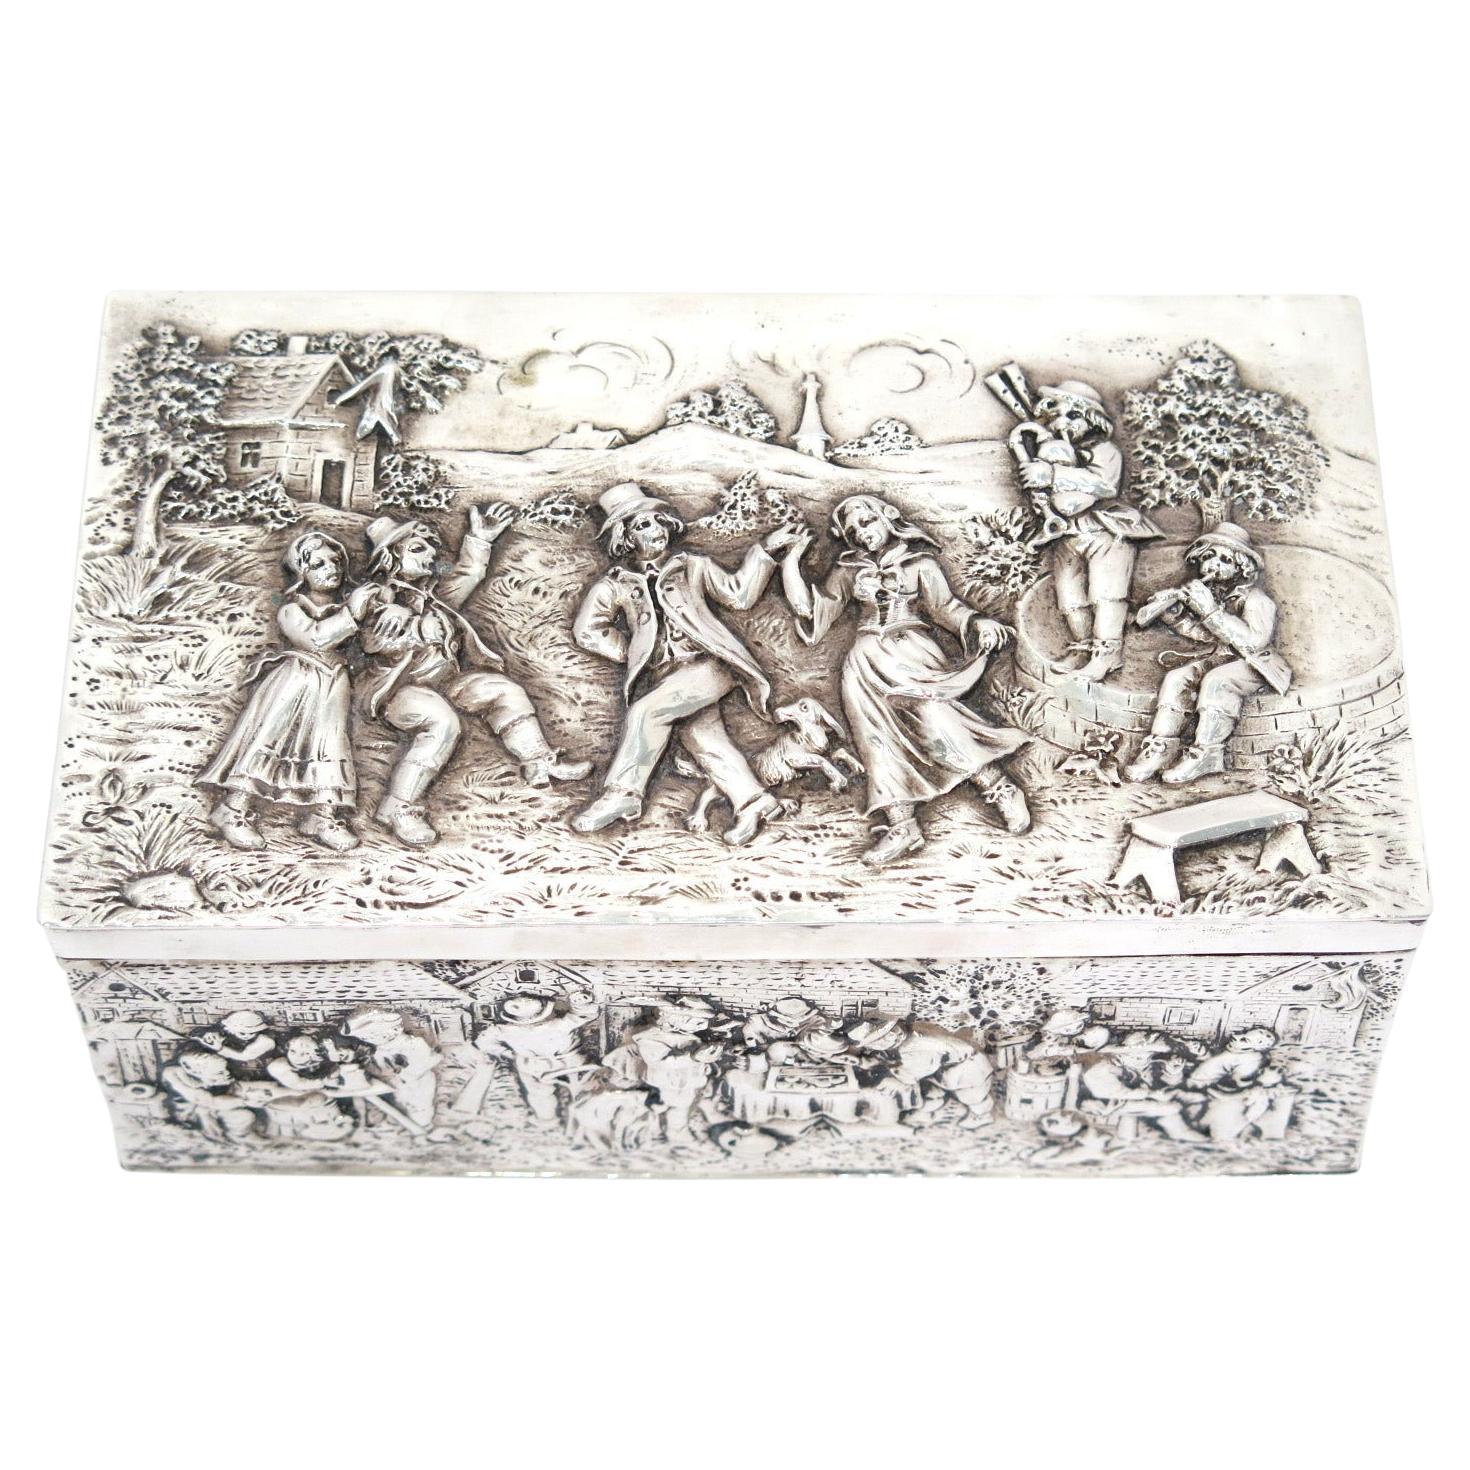 7 po. - Boîte d'antiquités allemande en argent représentant une scène de danse